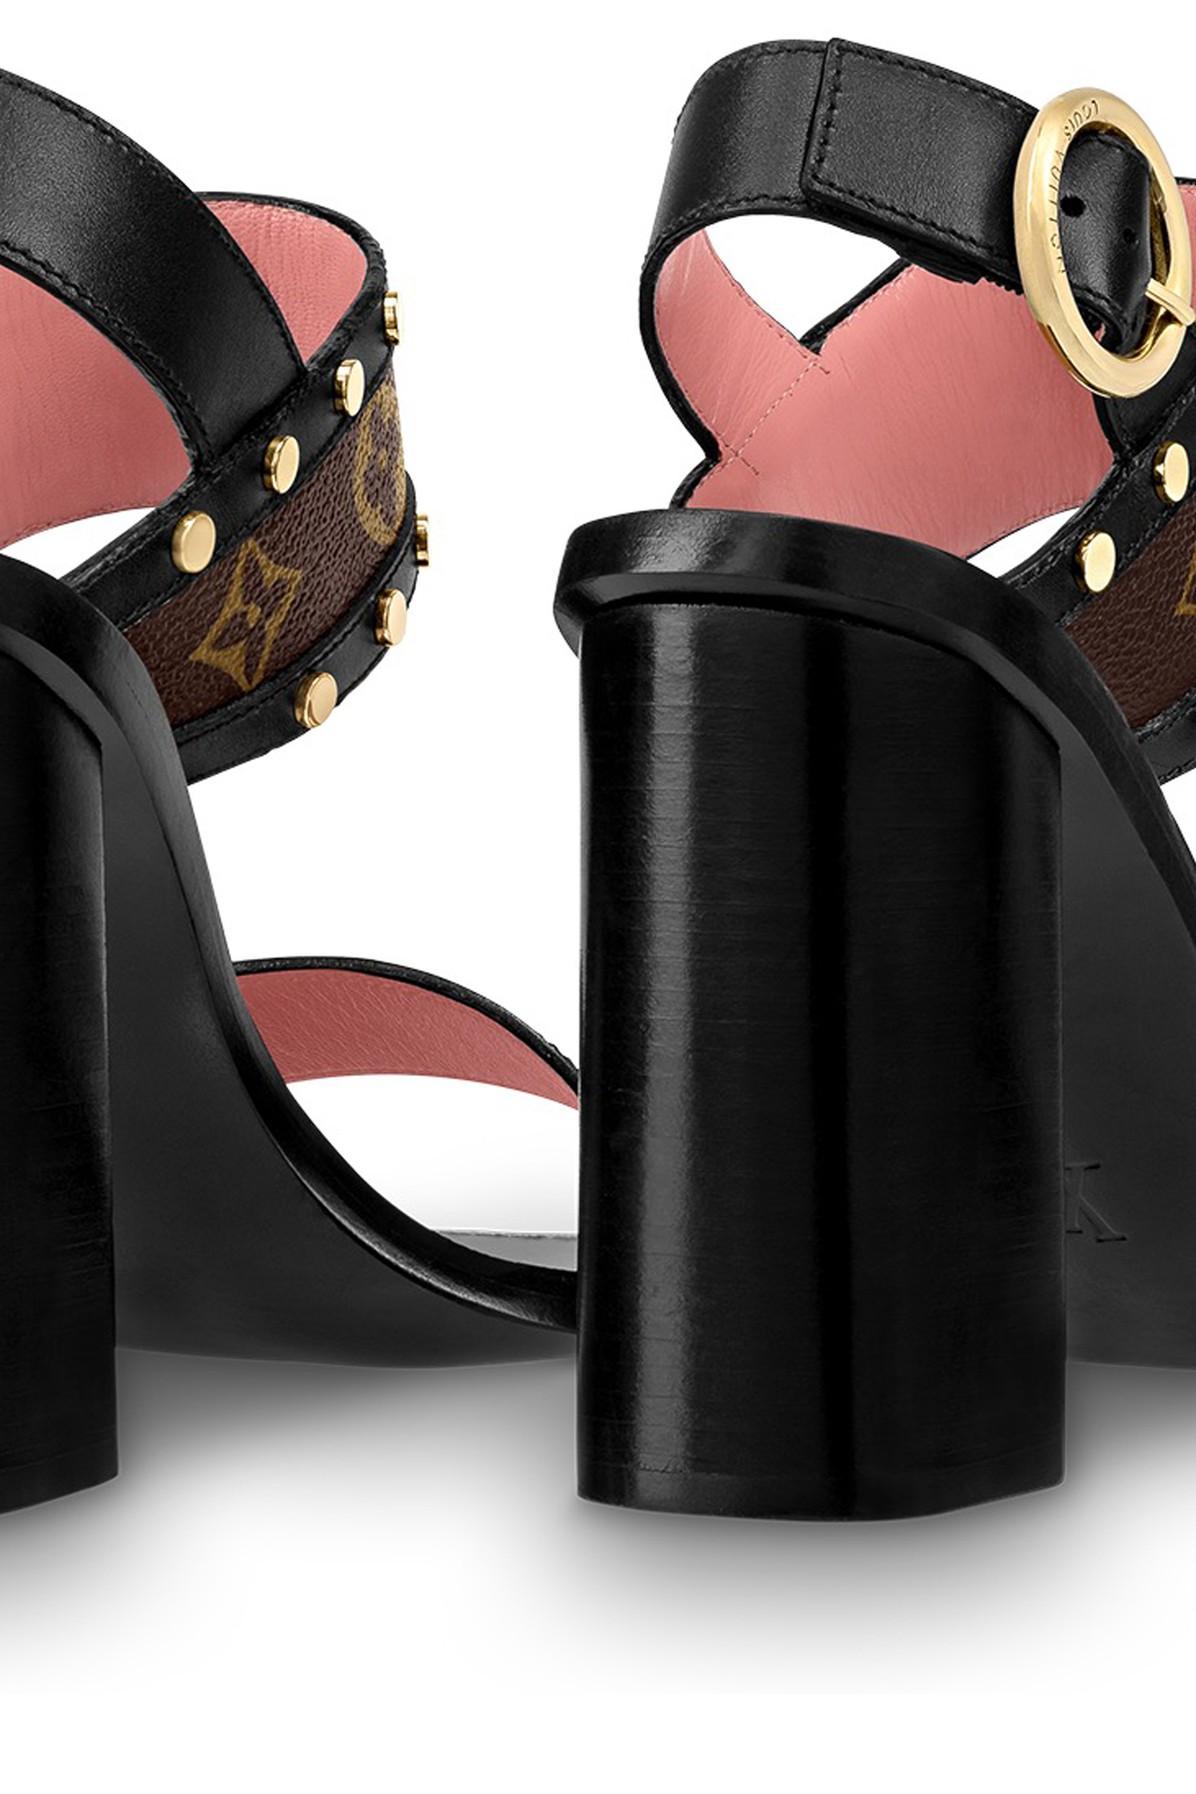 Louis Vuitton - Authenticated Passenger Sandal - Leather Black Plain for Women, Never Worn